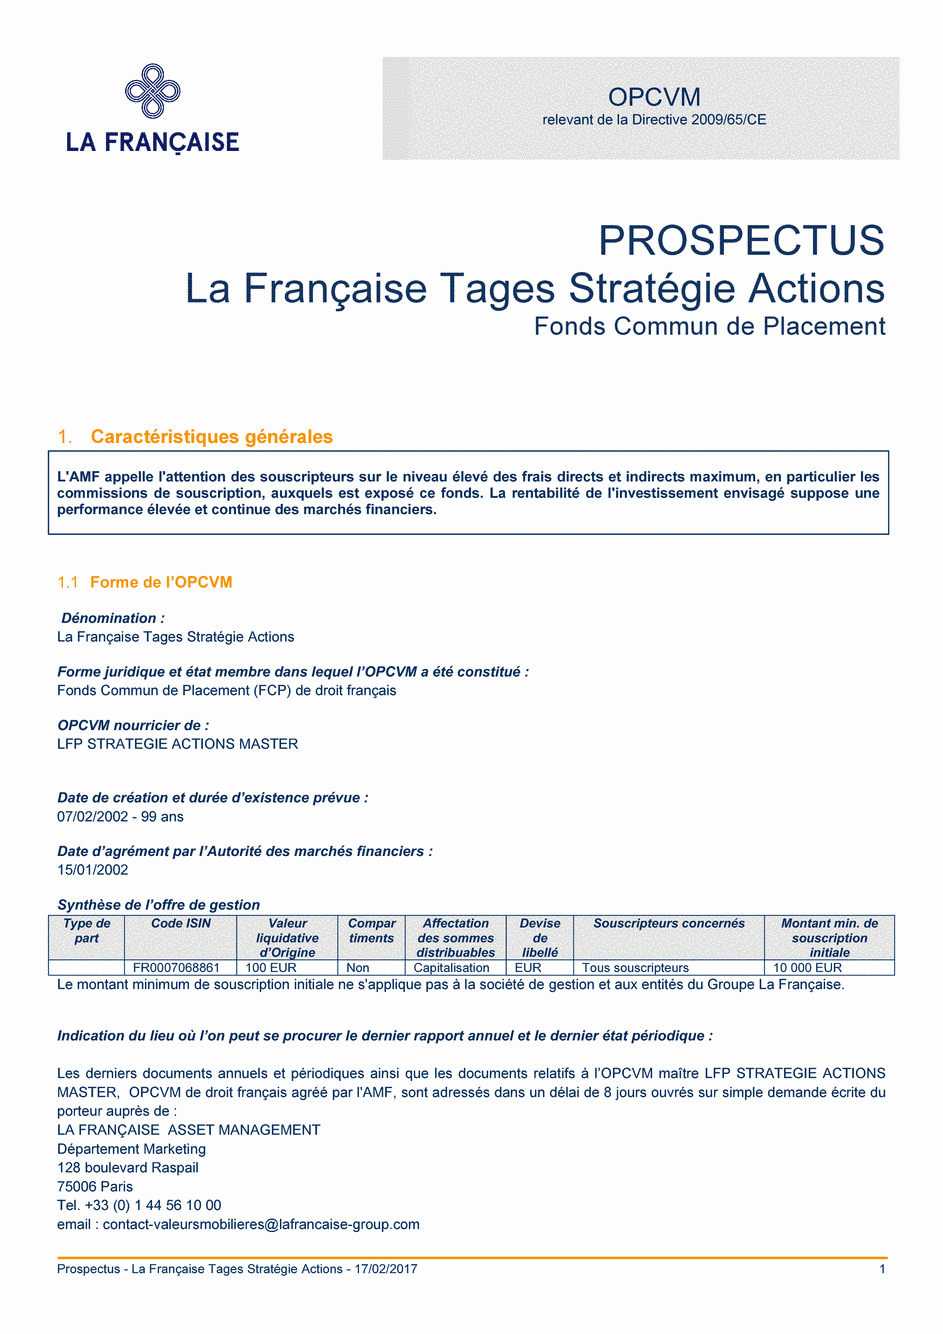 Prospectus La Française Tages Stratégie Actions - 17/02/2017 - Français